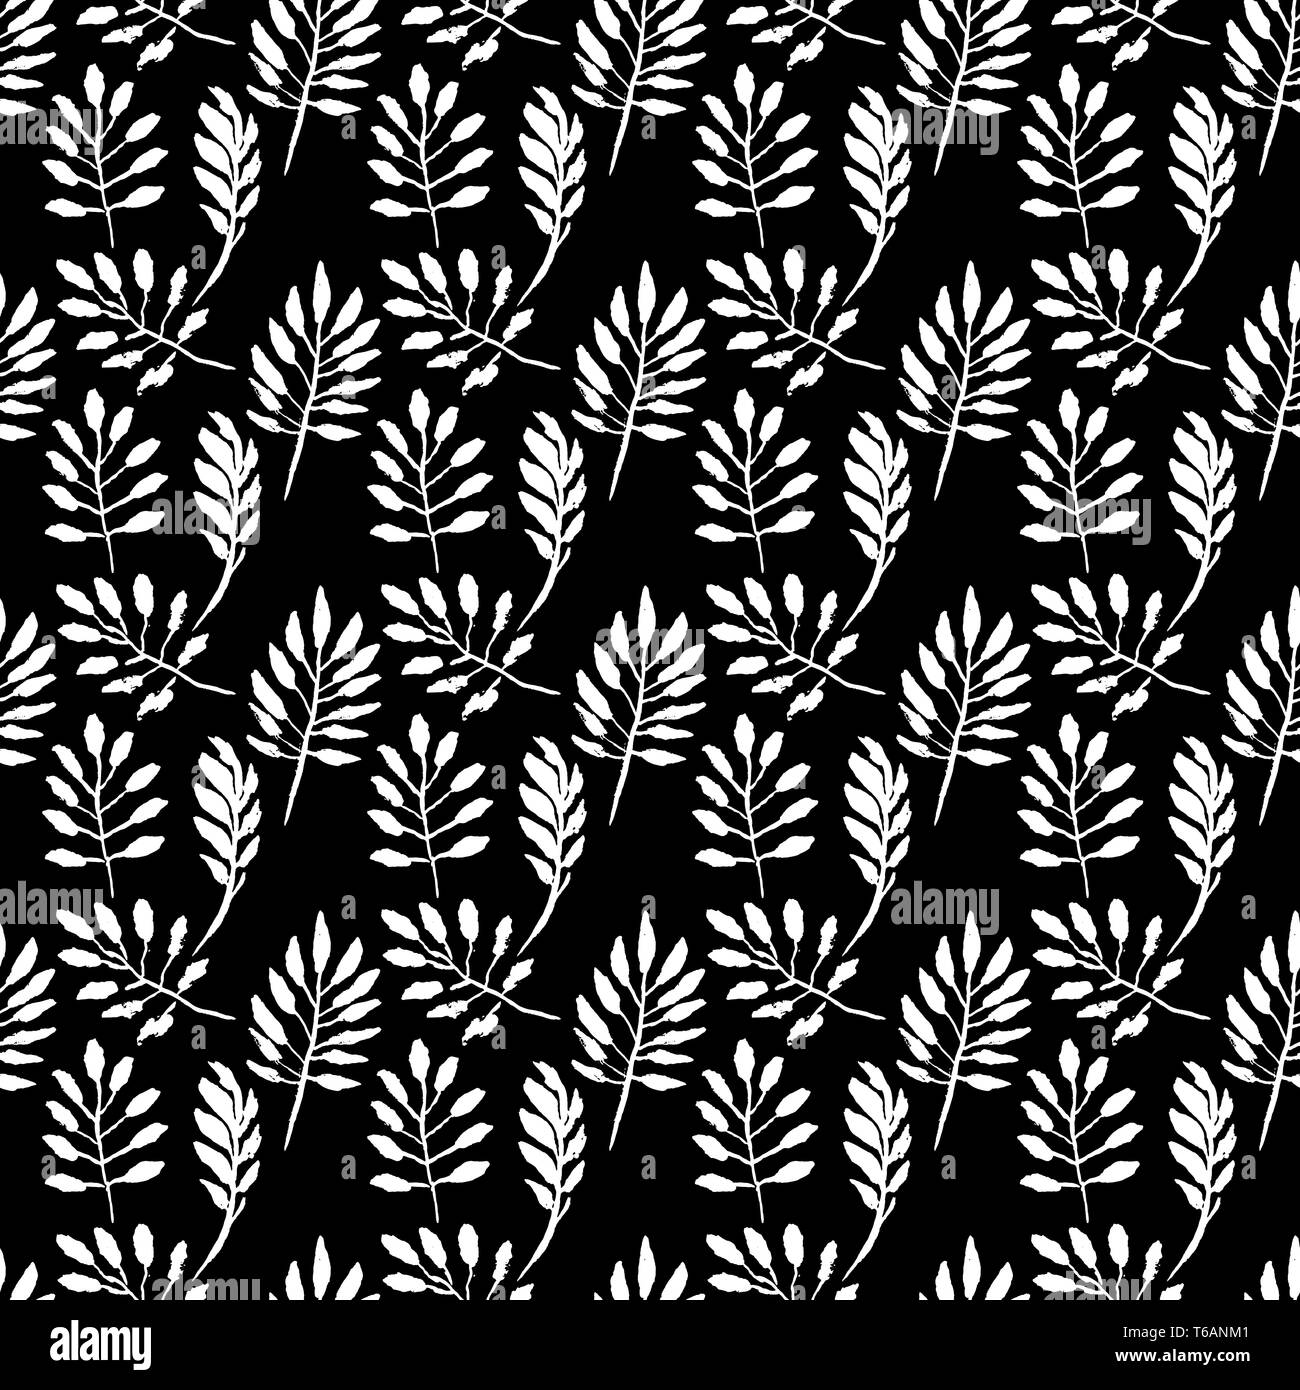 Leaves seamless pattern. Grunge vector dry brush illustration Stock ...